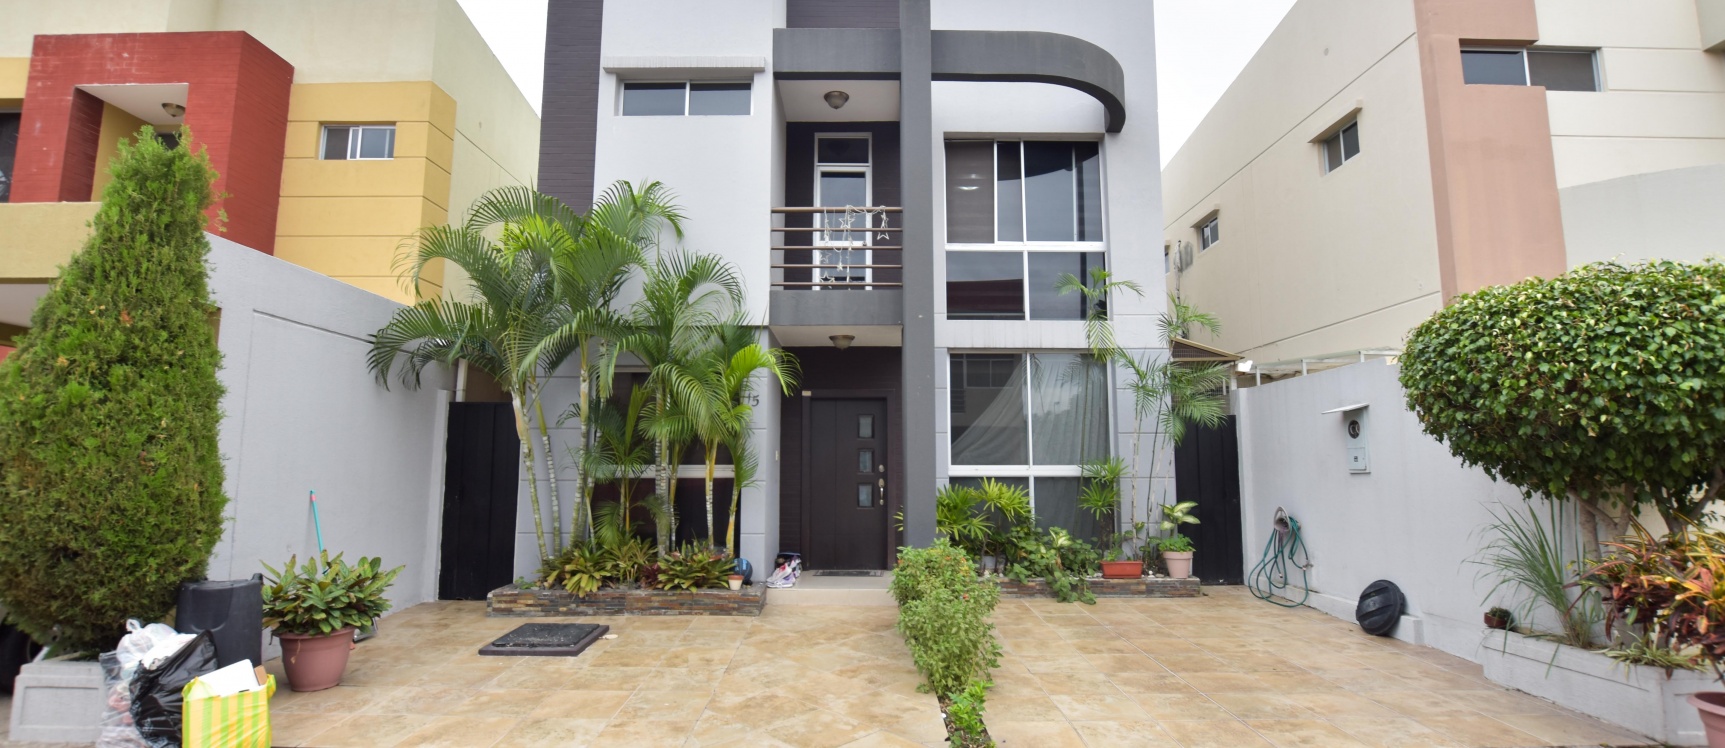 GeoBienes - Casa en venta urbanización Belo Horizonte Etapa Perugia - Plusvalia Guayaquil Casas de venta y alquiler Inmobiliaria Ecuador